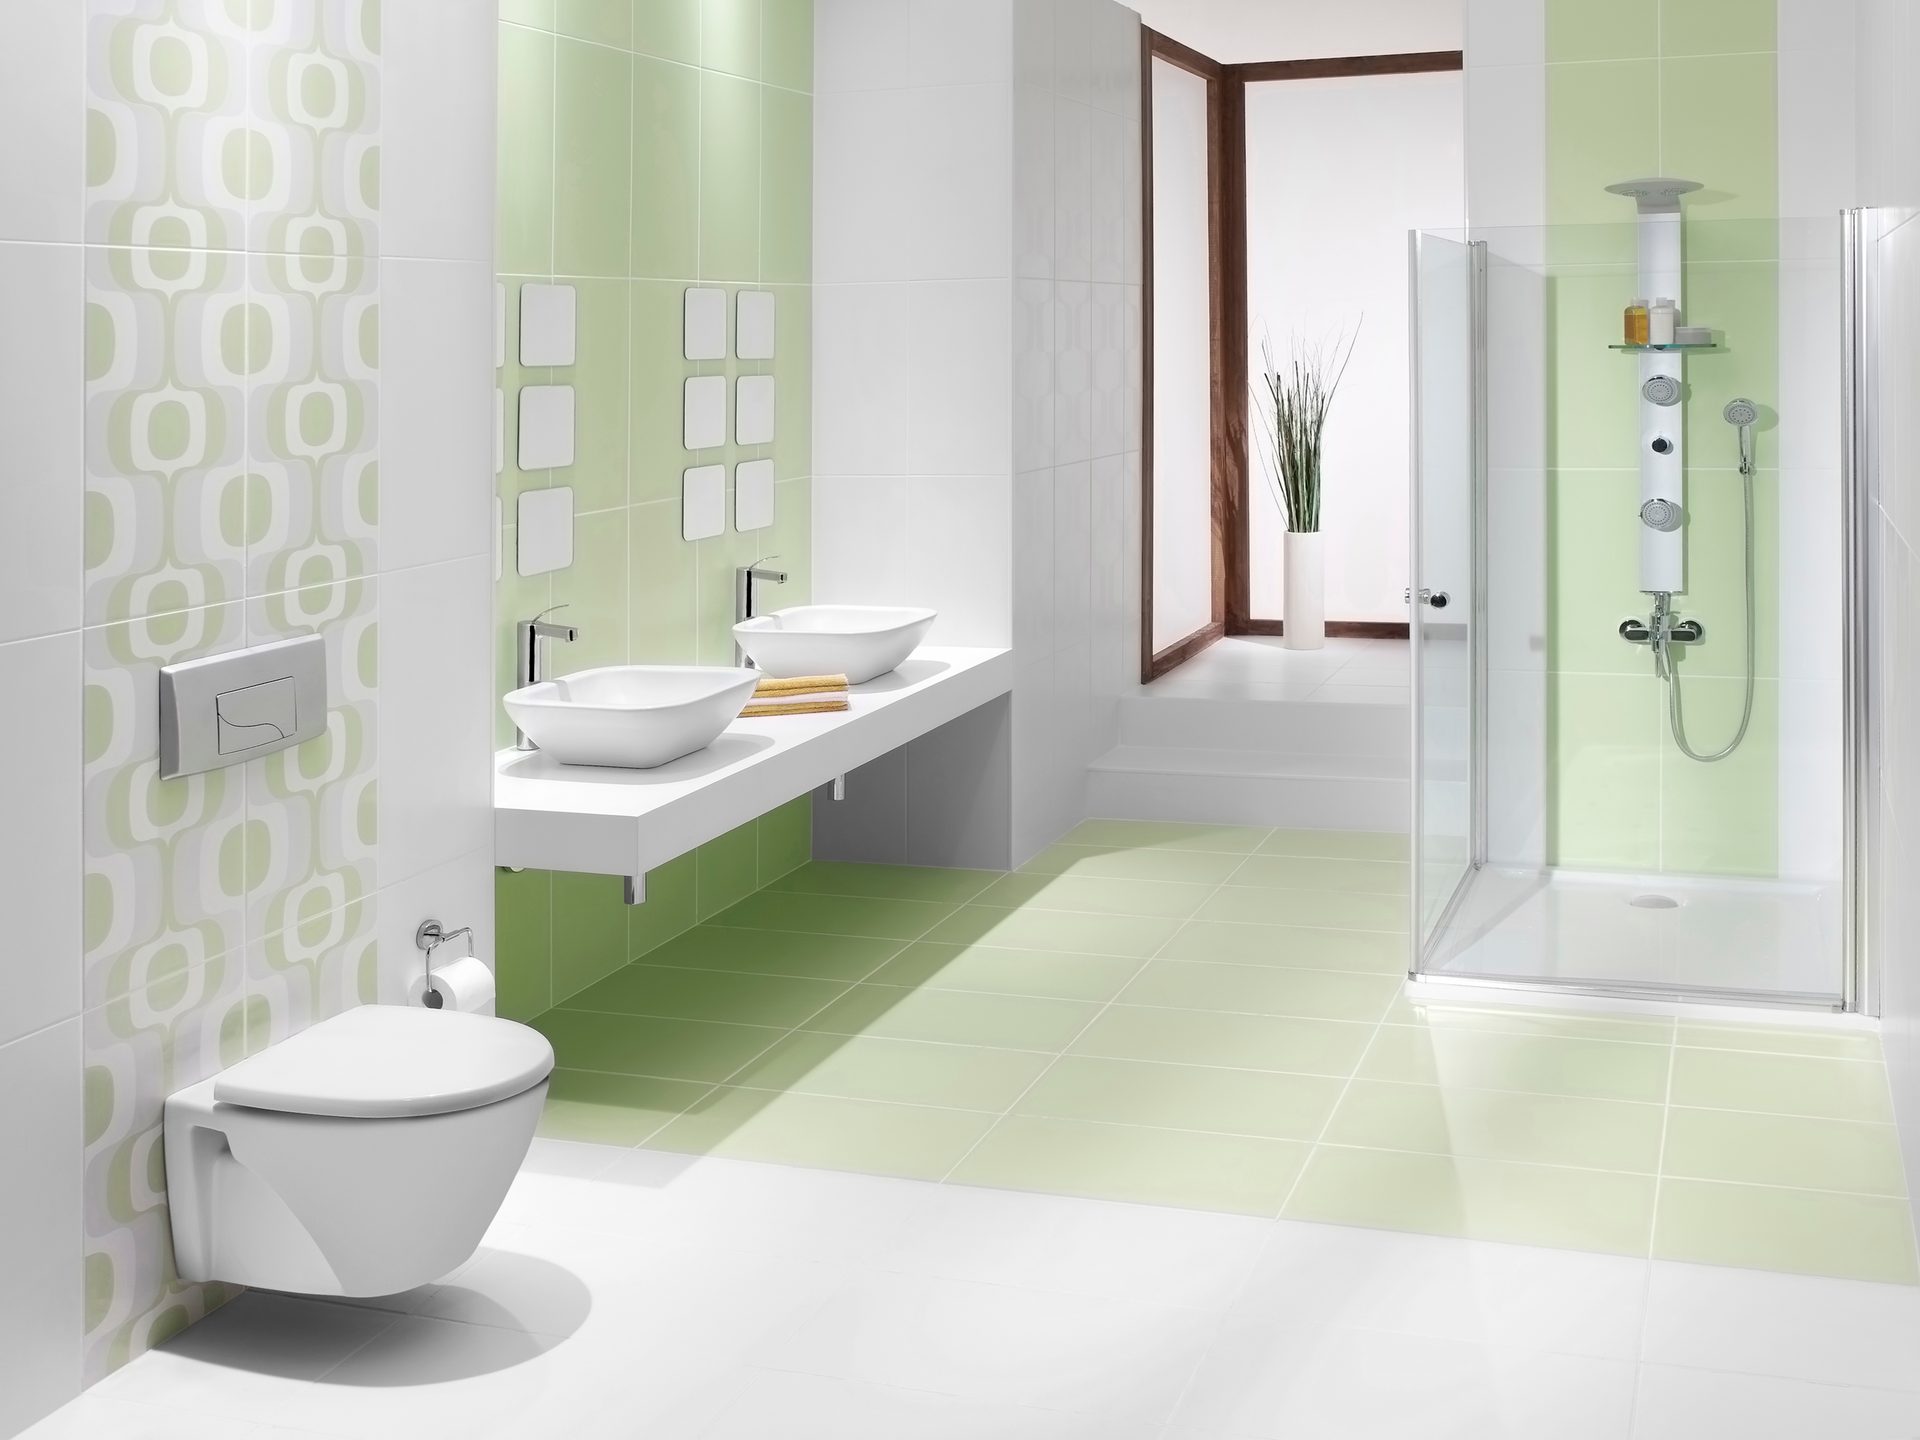 Plumbing fixture, Interior design, Bathroom sink, Mirror, Tap, Property, Purple